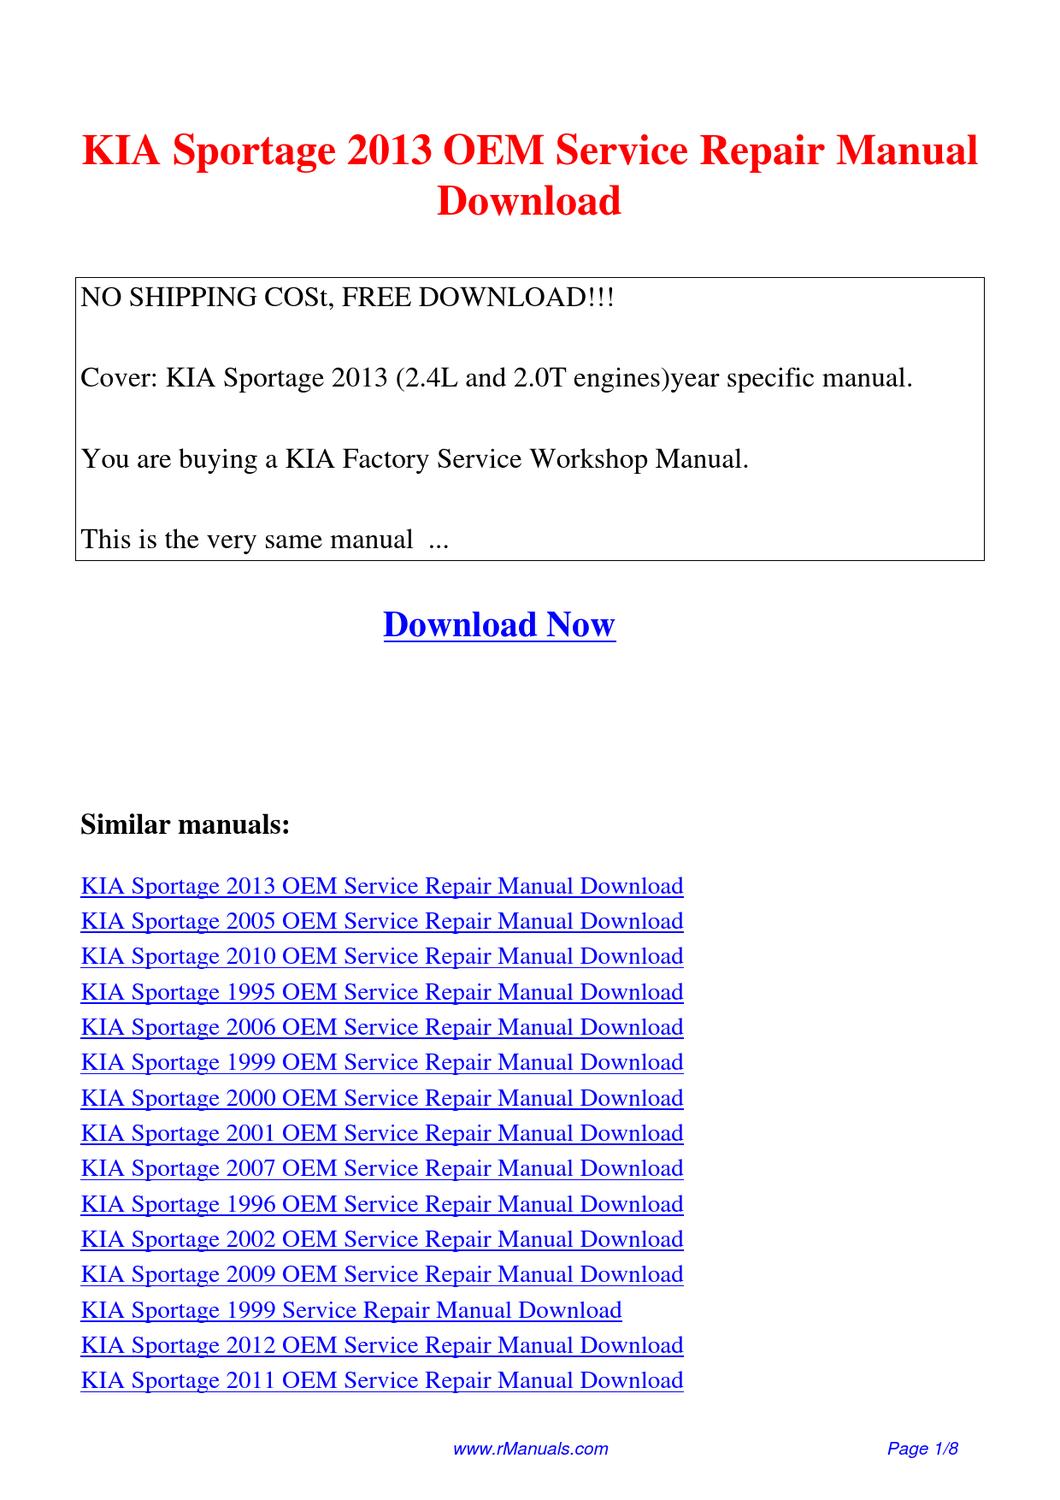 kia sportage 1996 oem service repair manual download